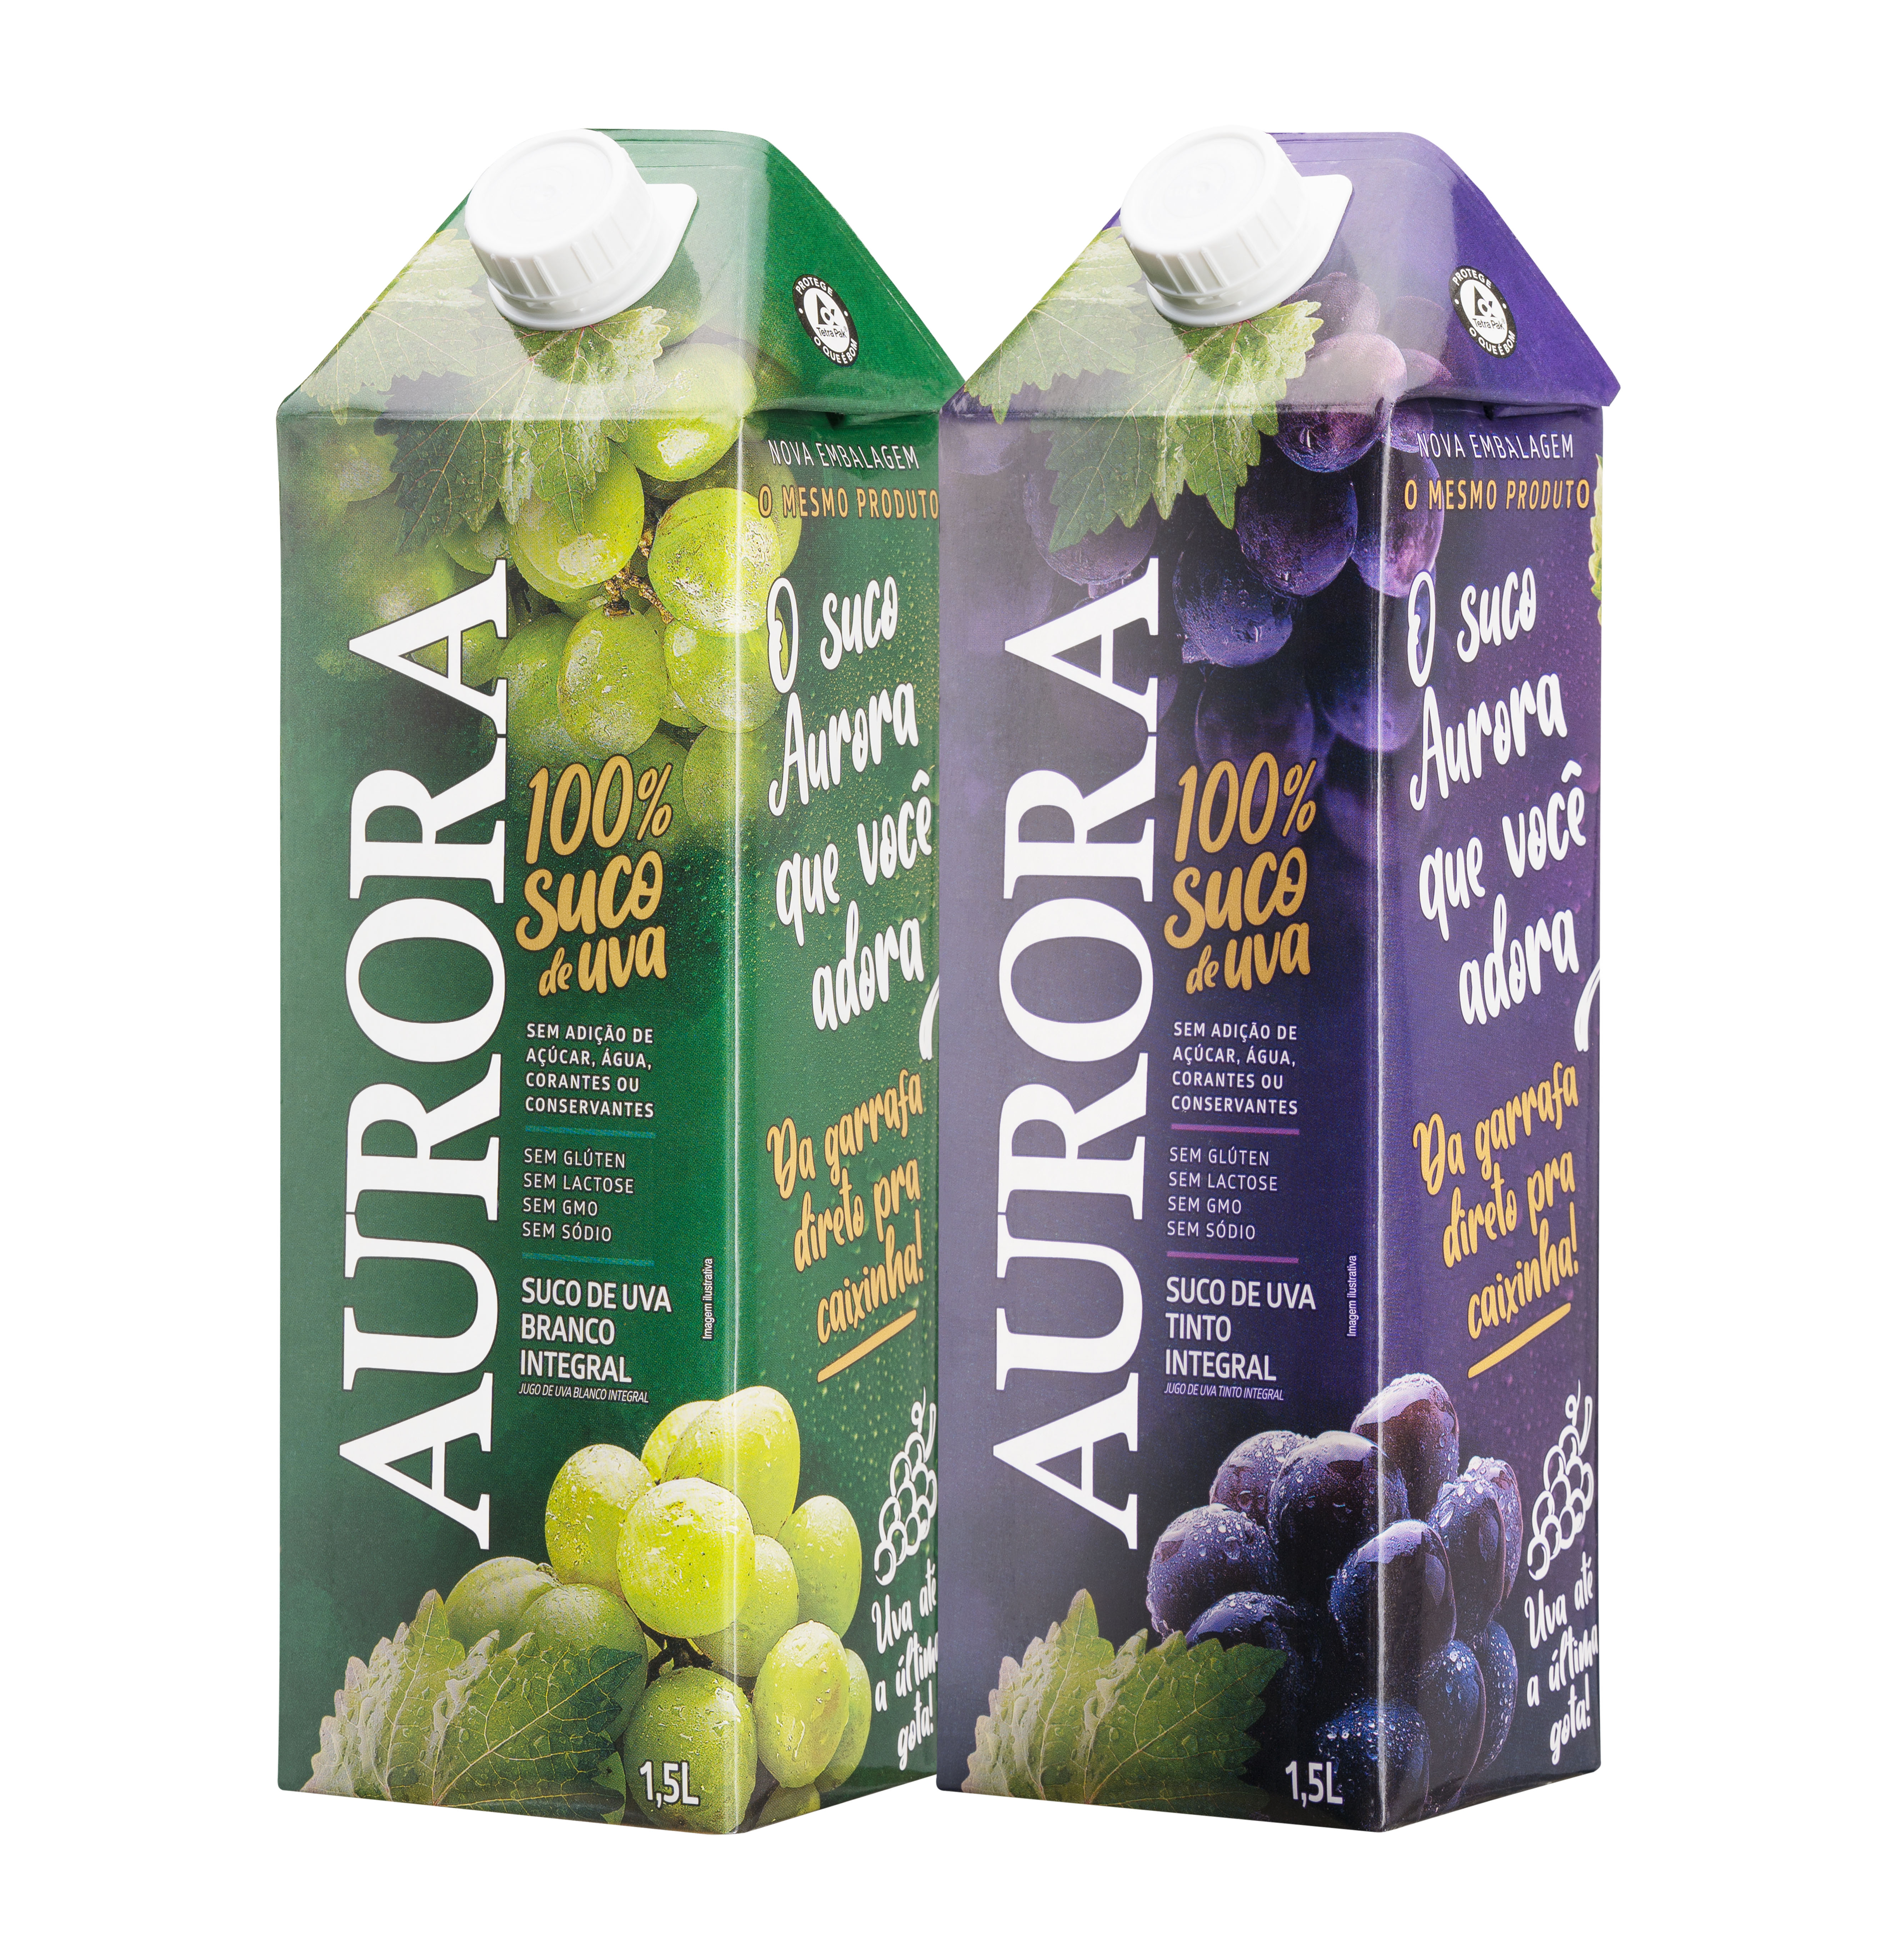 Aurora lança suco de uva integral em embalagem de 1,5 litro da Tetra Pak